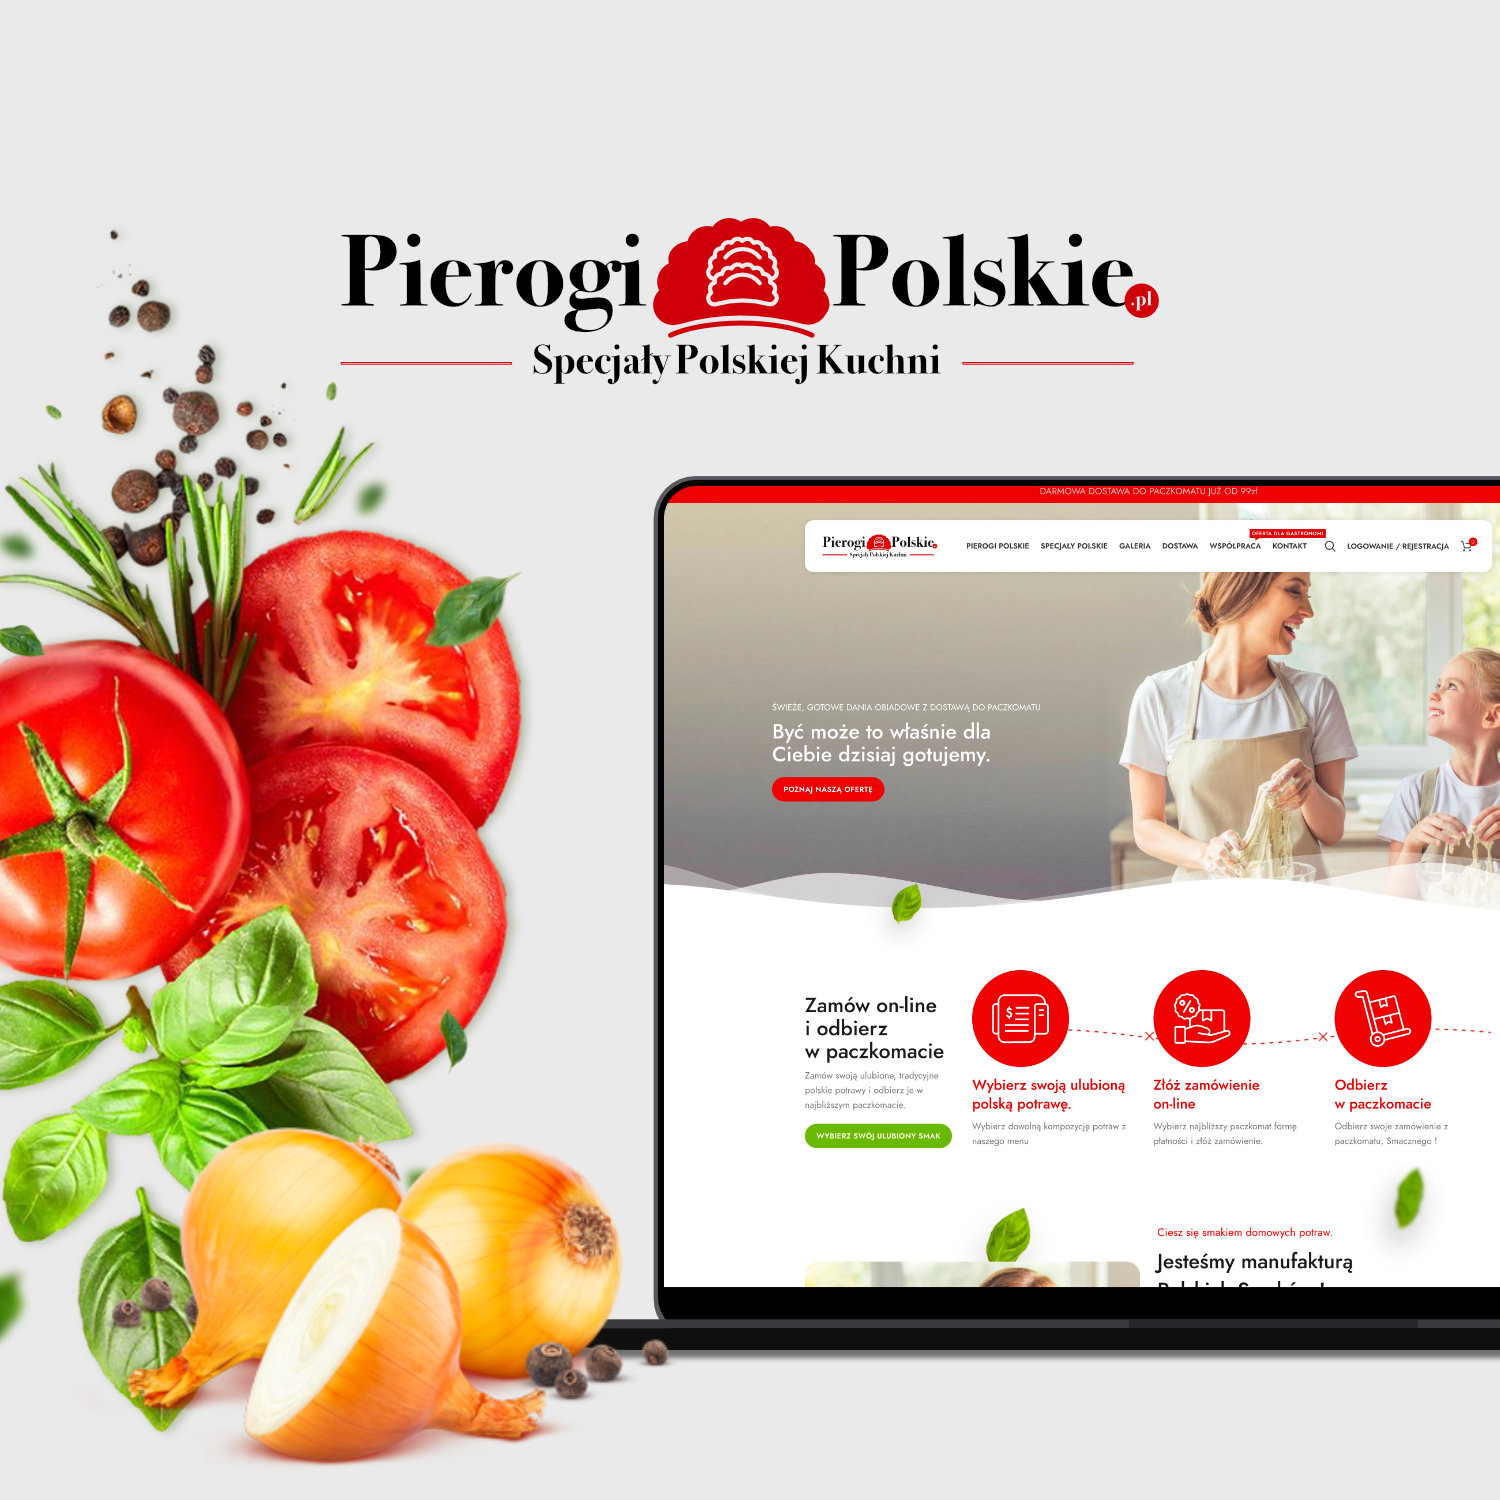 pierogipolskie.pl – Obiad do paczkomatu